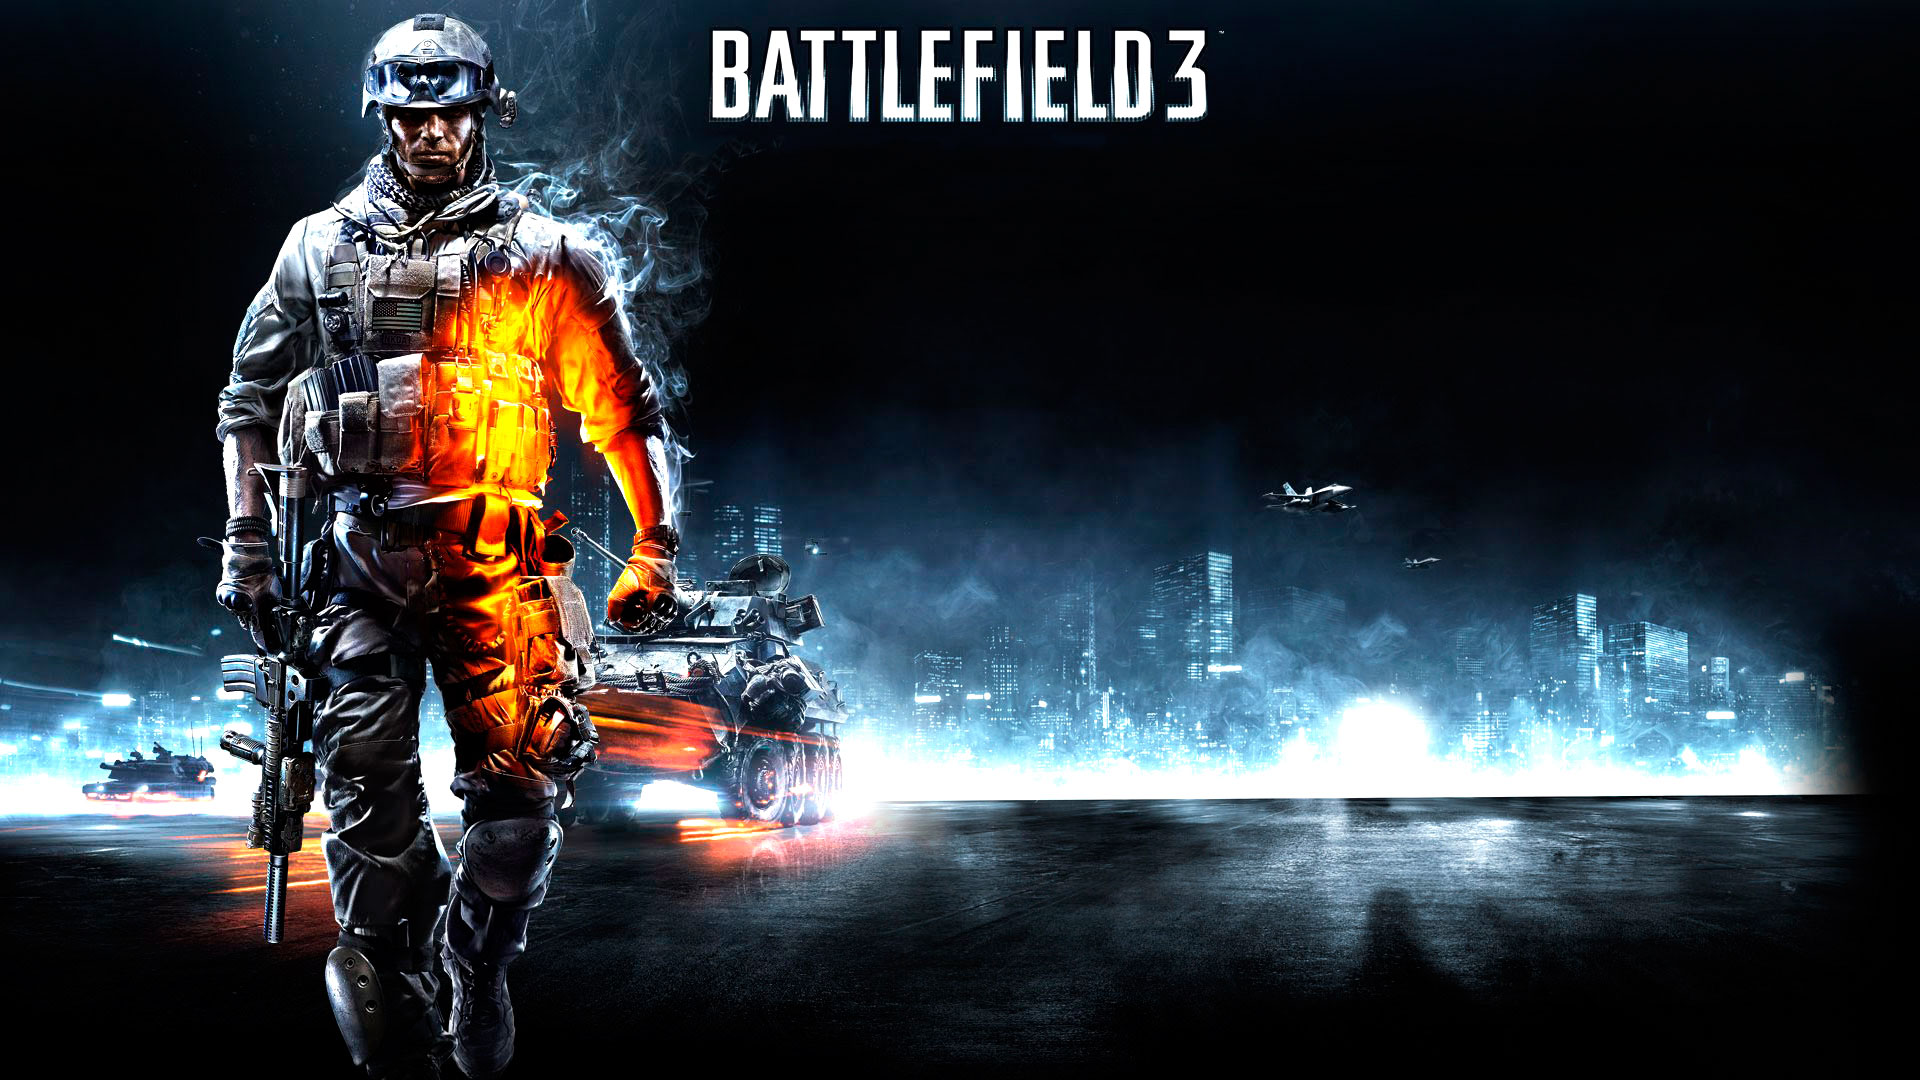 HD Battlefield 3 Wallpapers High Resolution 1080p Full screen